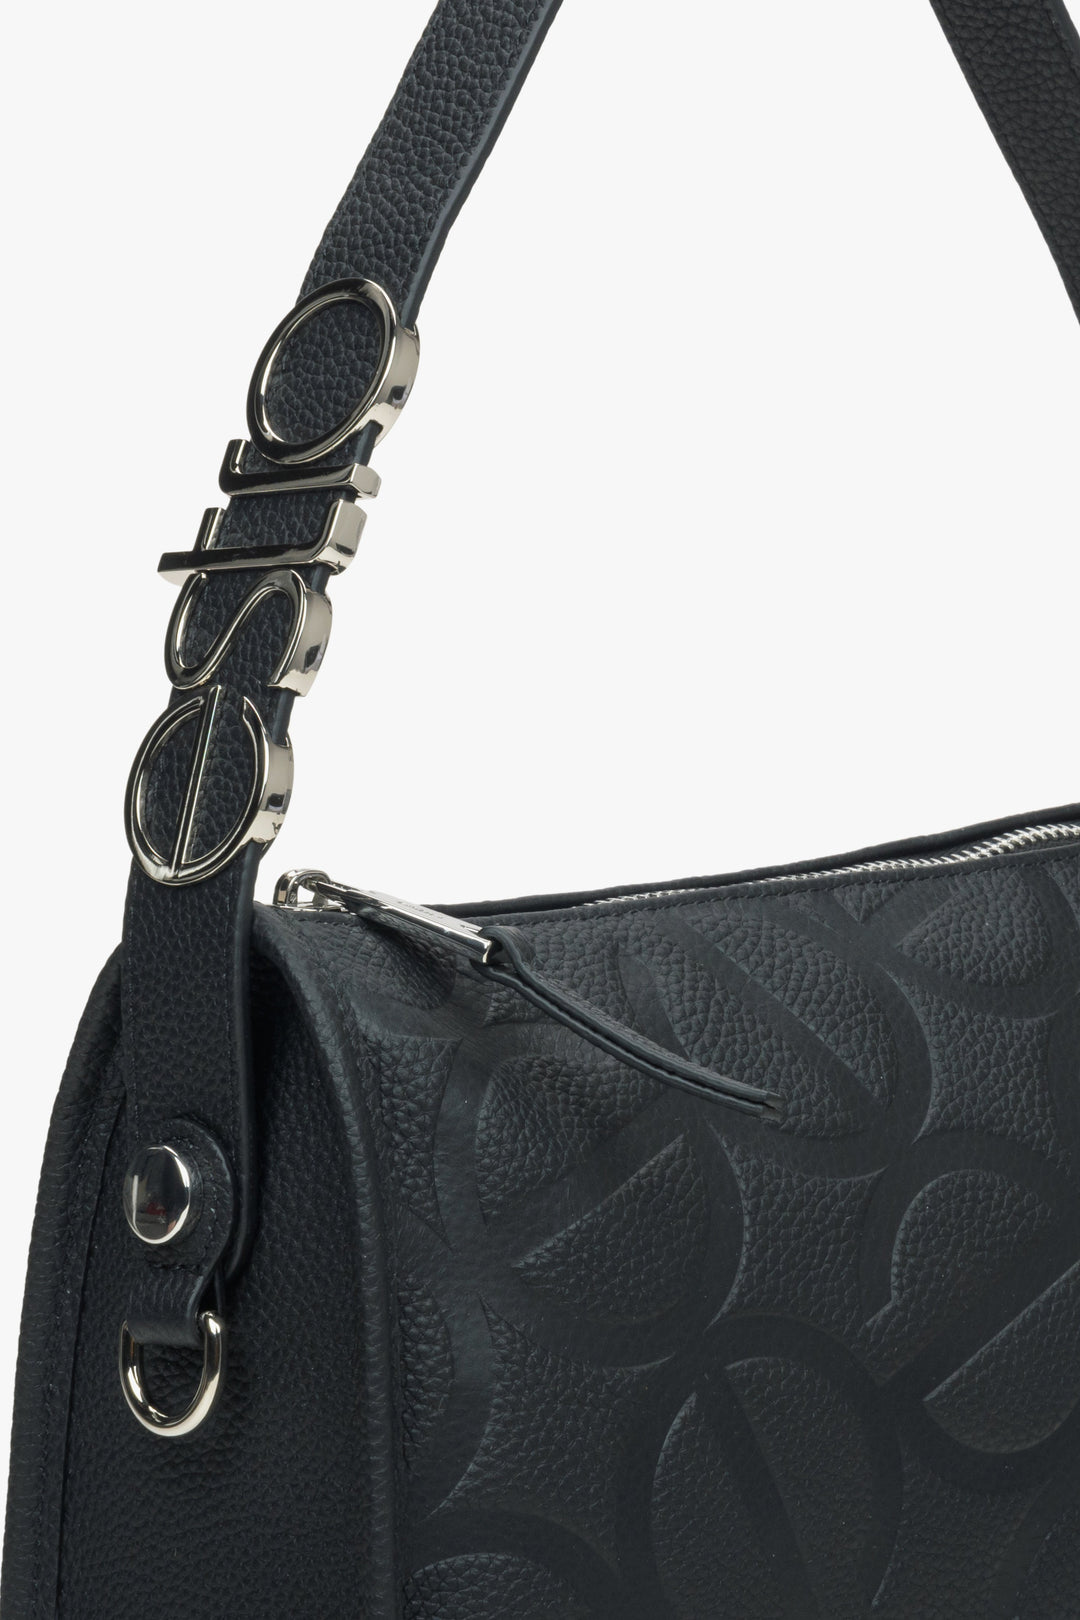 Women's black shoulder bag - a close-up on details.